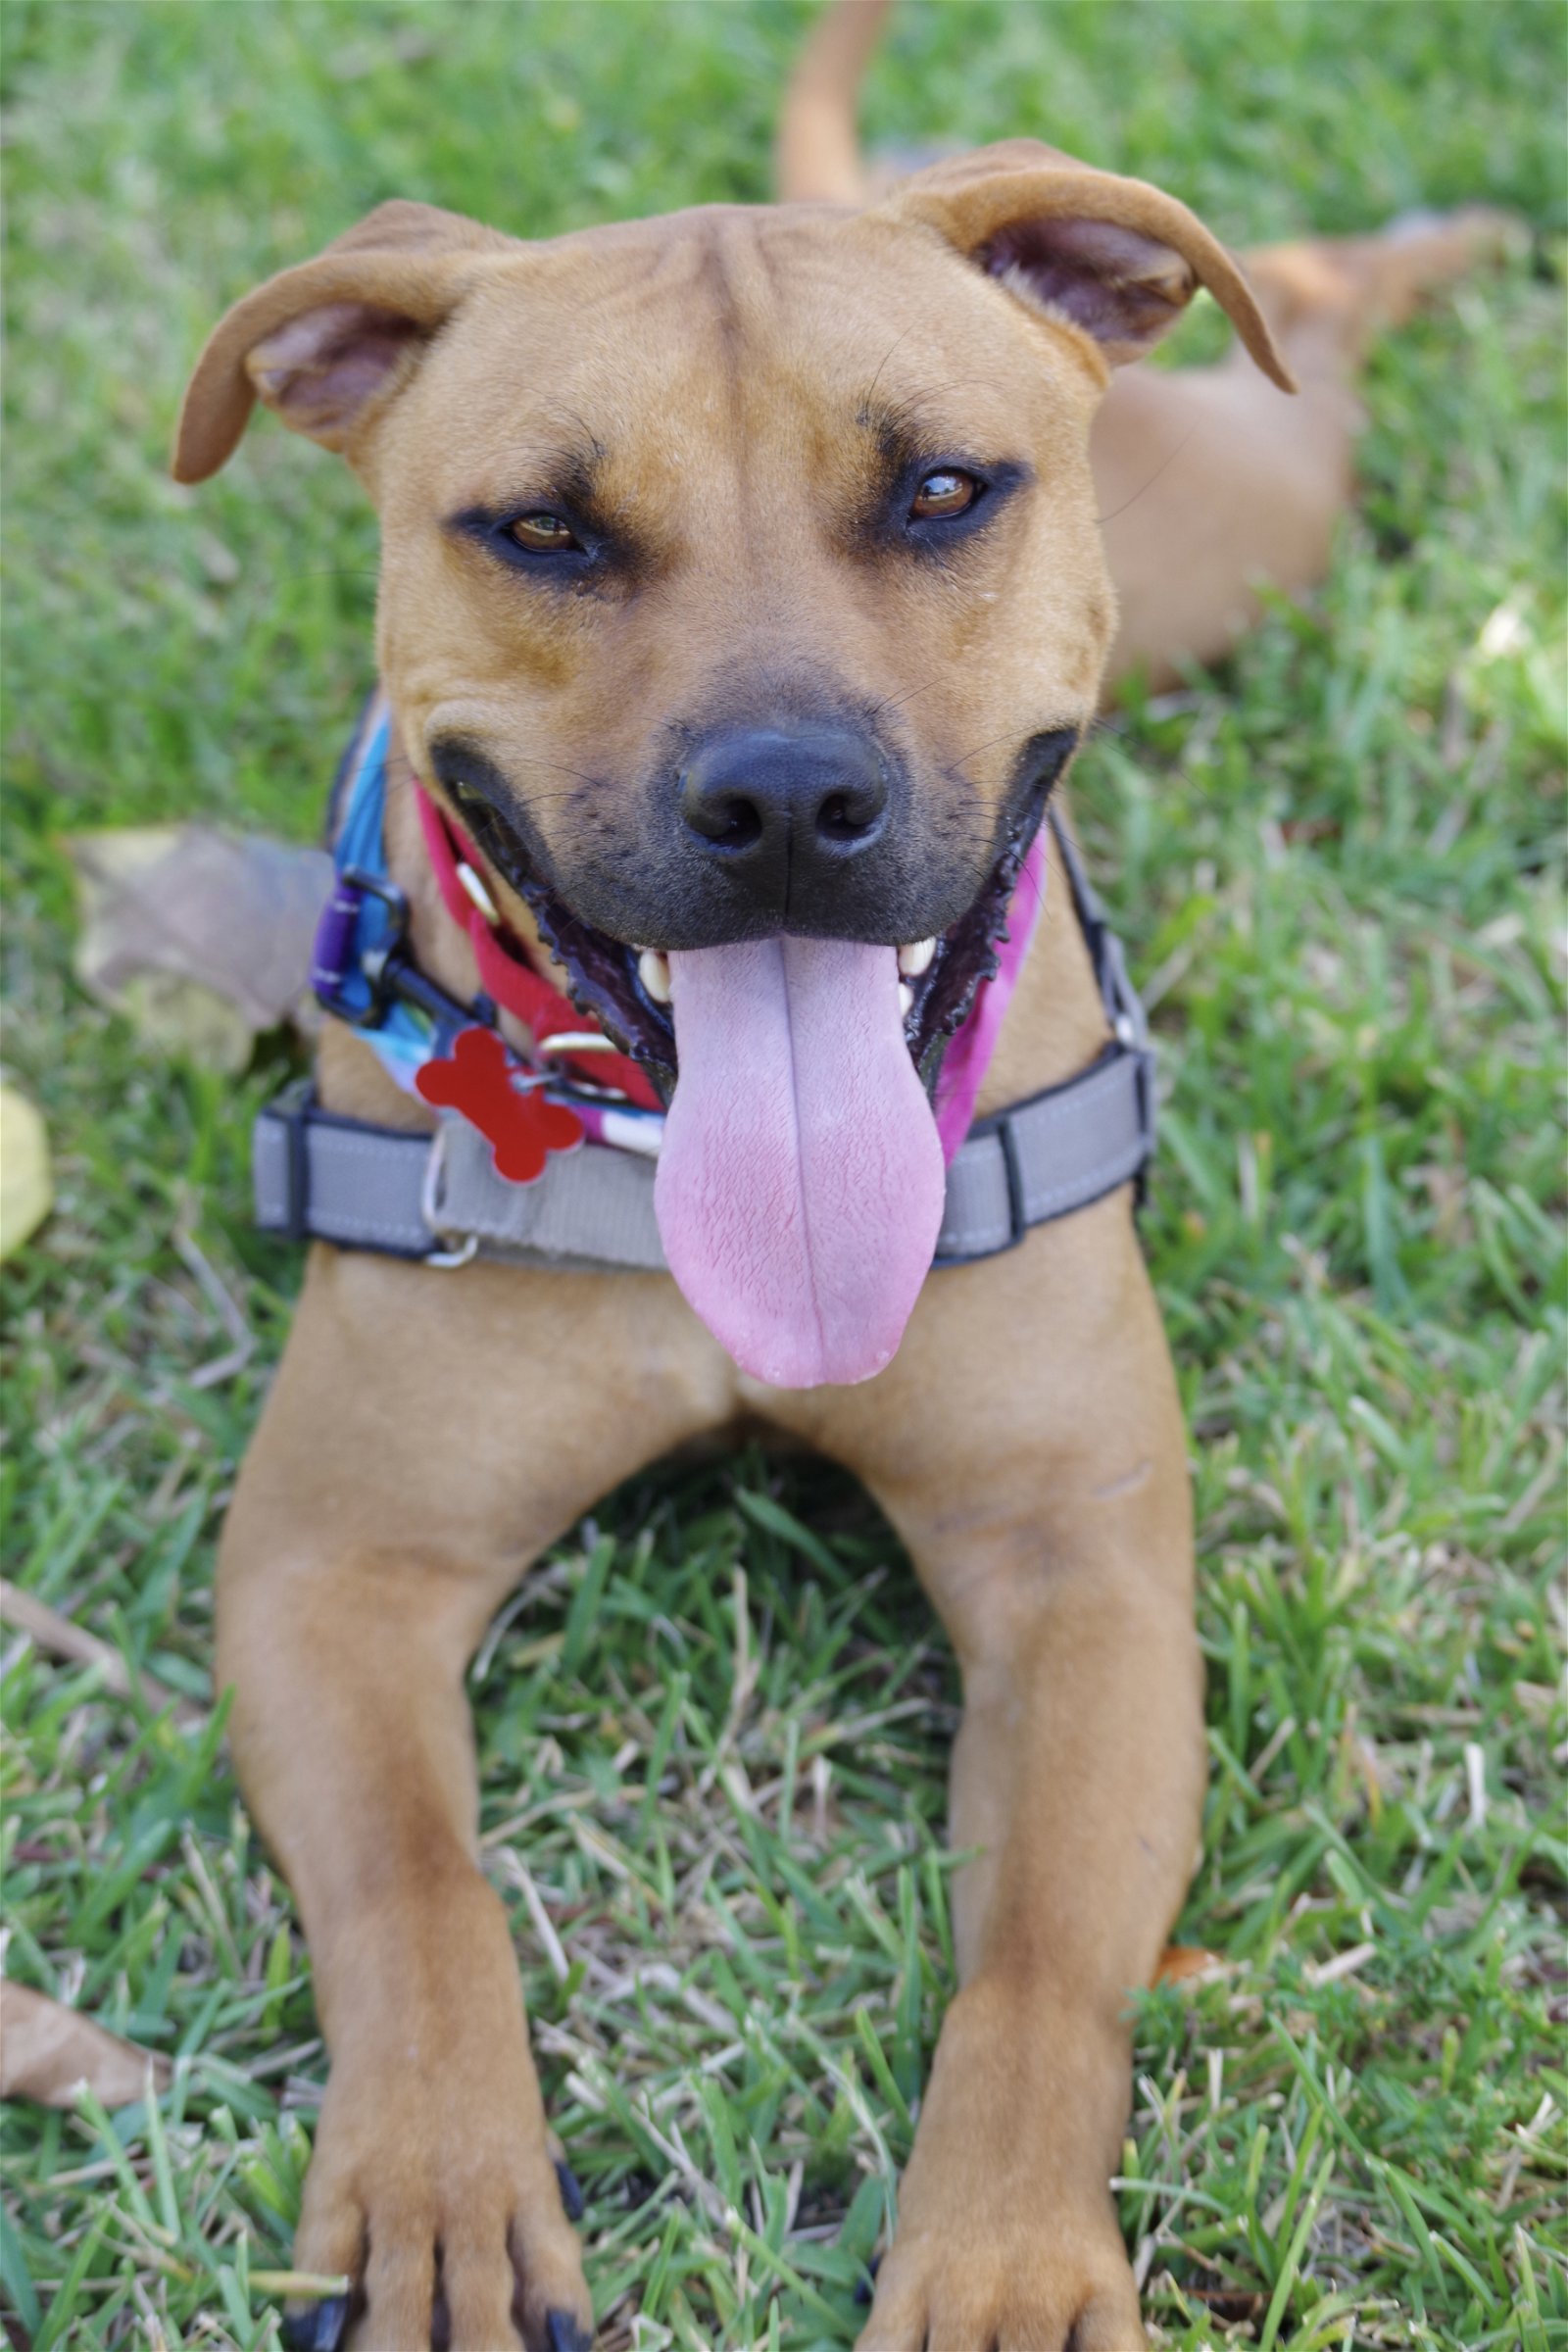 adoptable Dog in Miami, FL named Leni